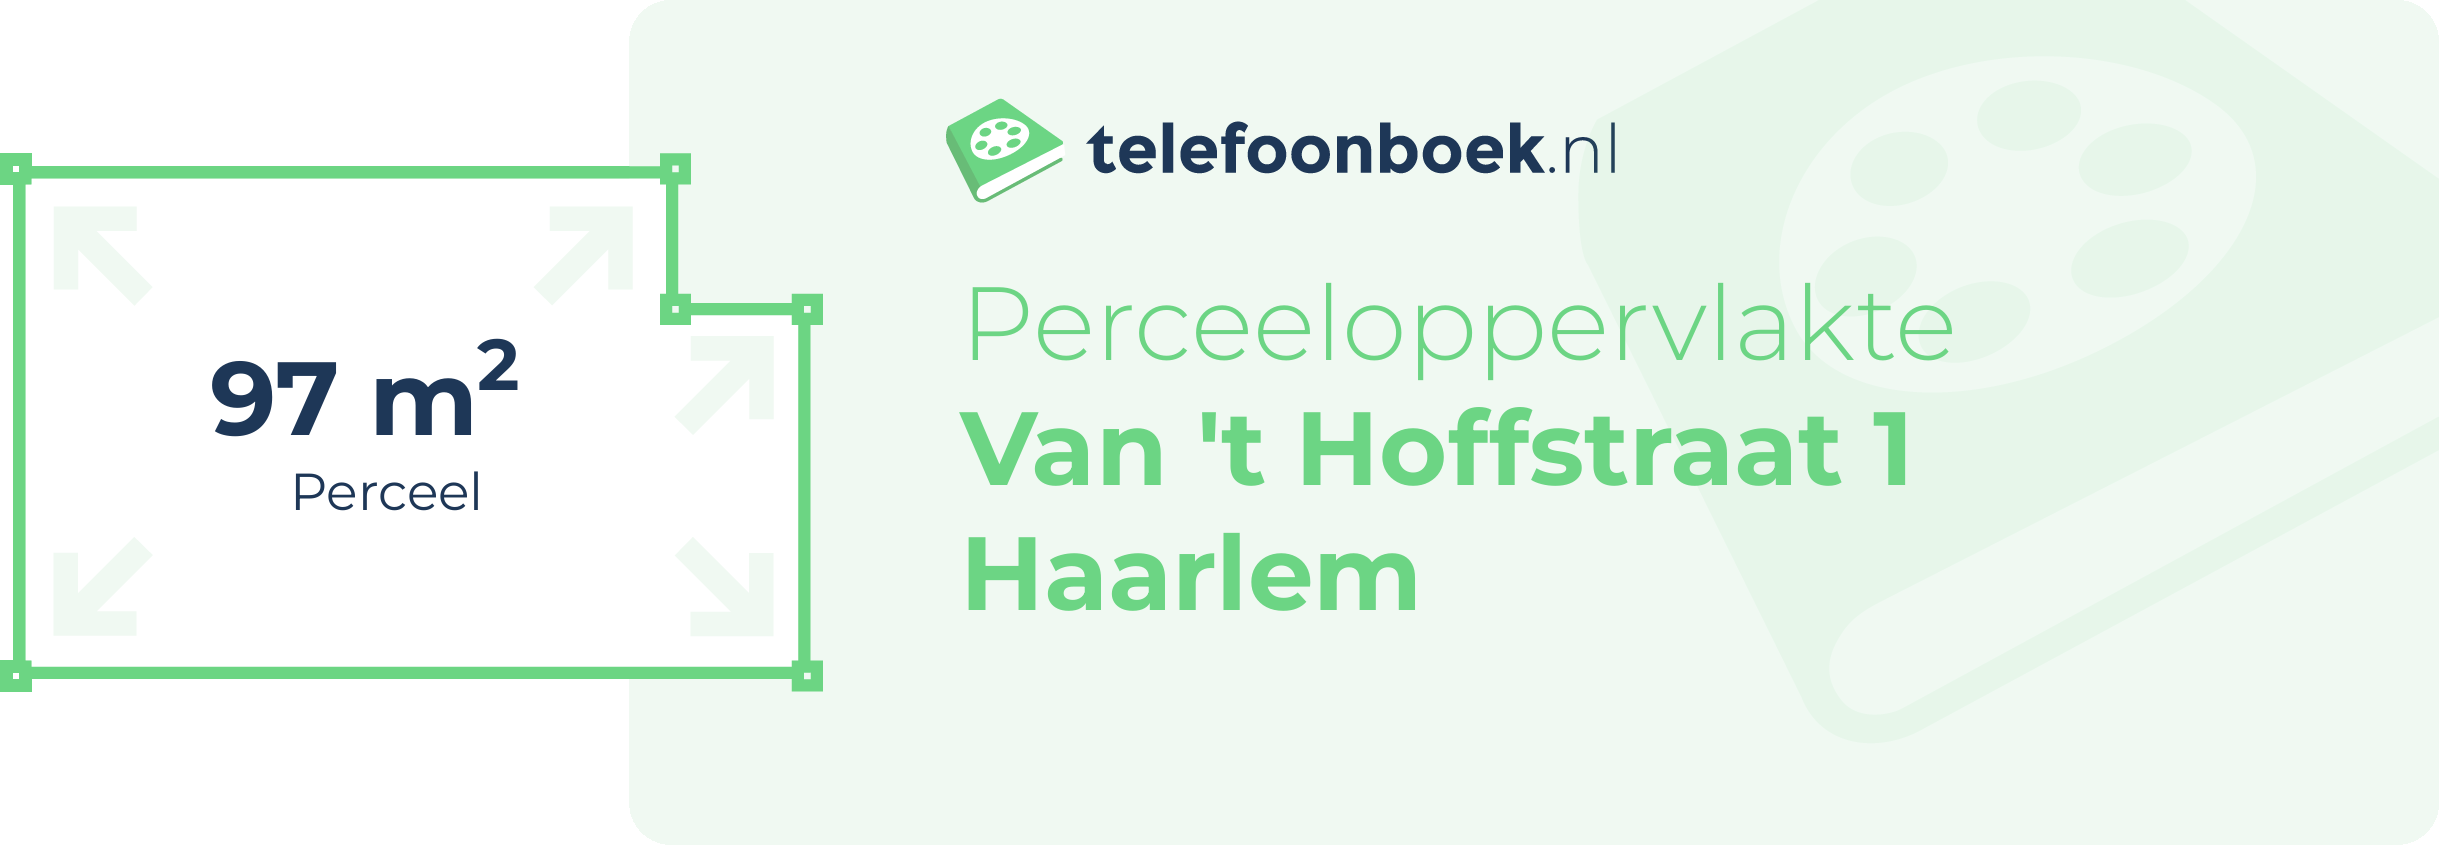 Perceeloppervlakte Van 't Hoffstraat 1 Haarlem